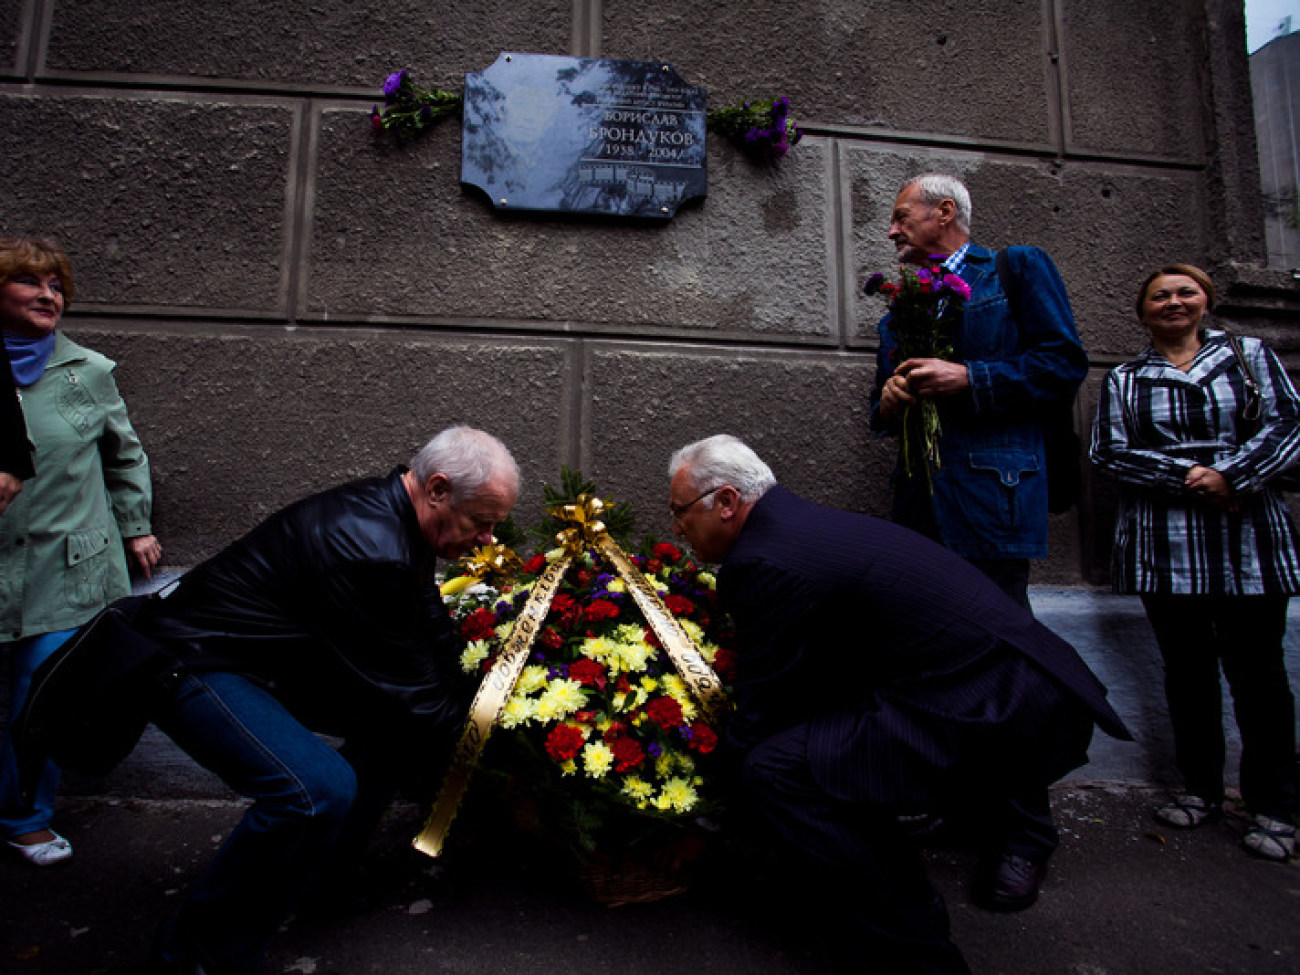 В Киеве открыли мемориальную доску Брондукову, 8 сентября 2012г.